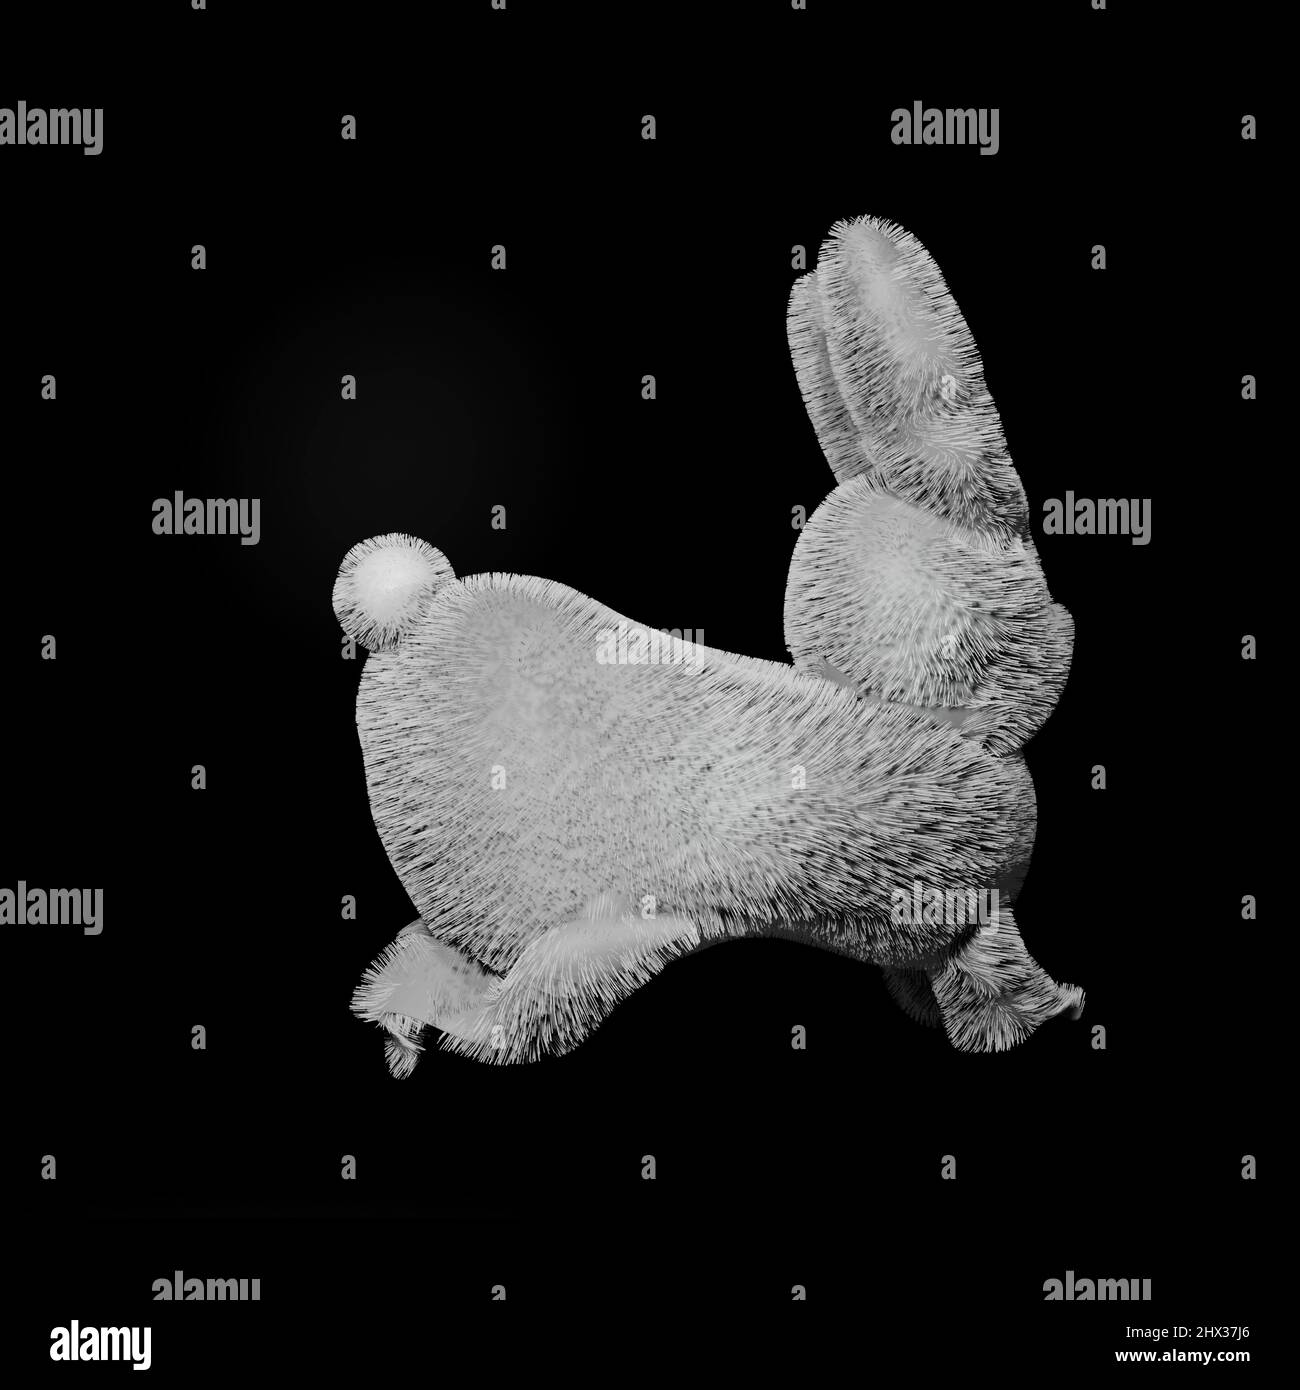 Baby rabbit isolated on black background. Stock Photo